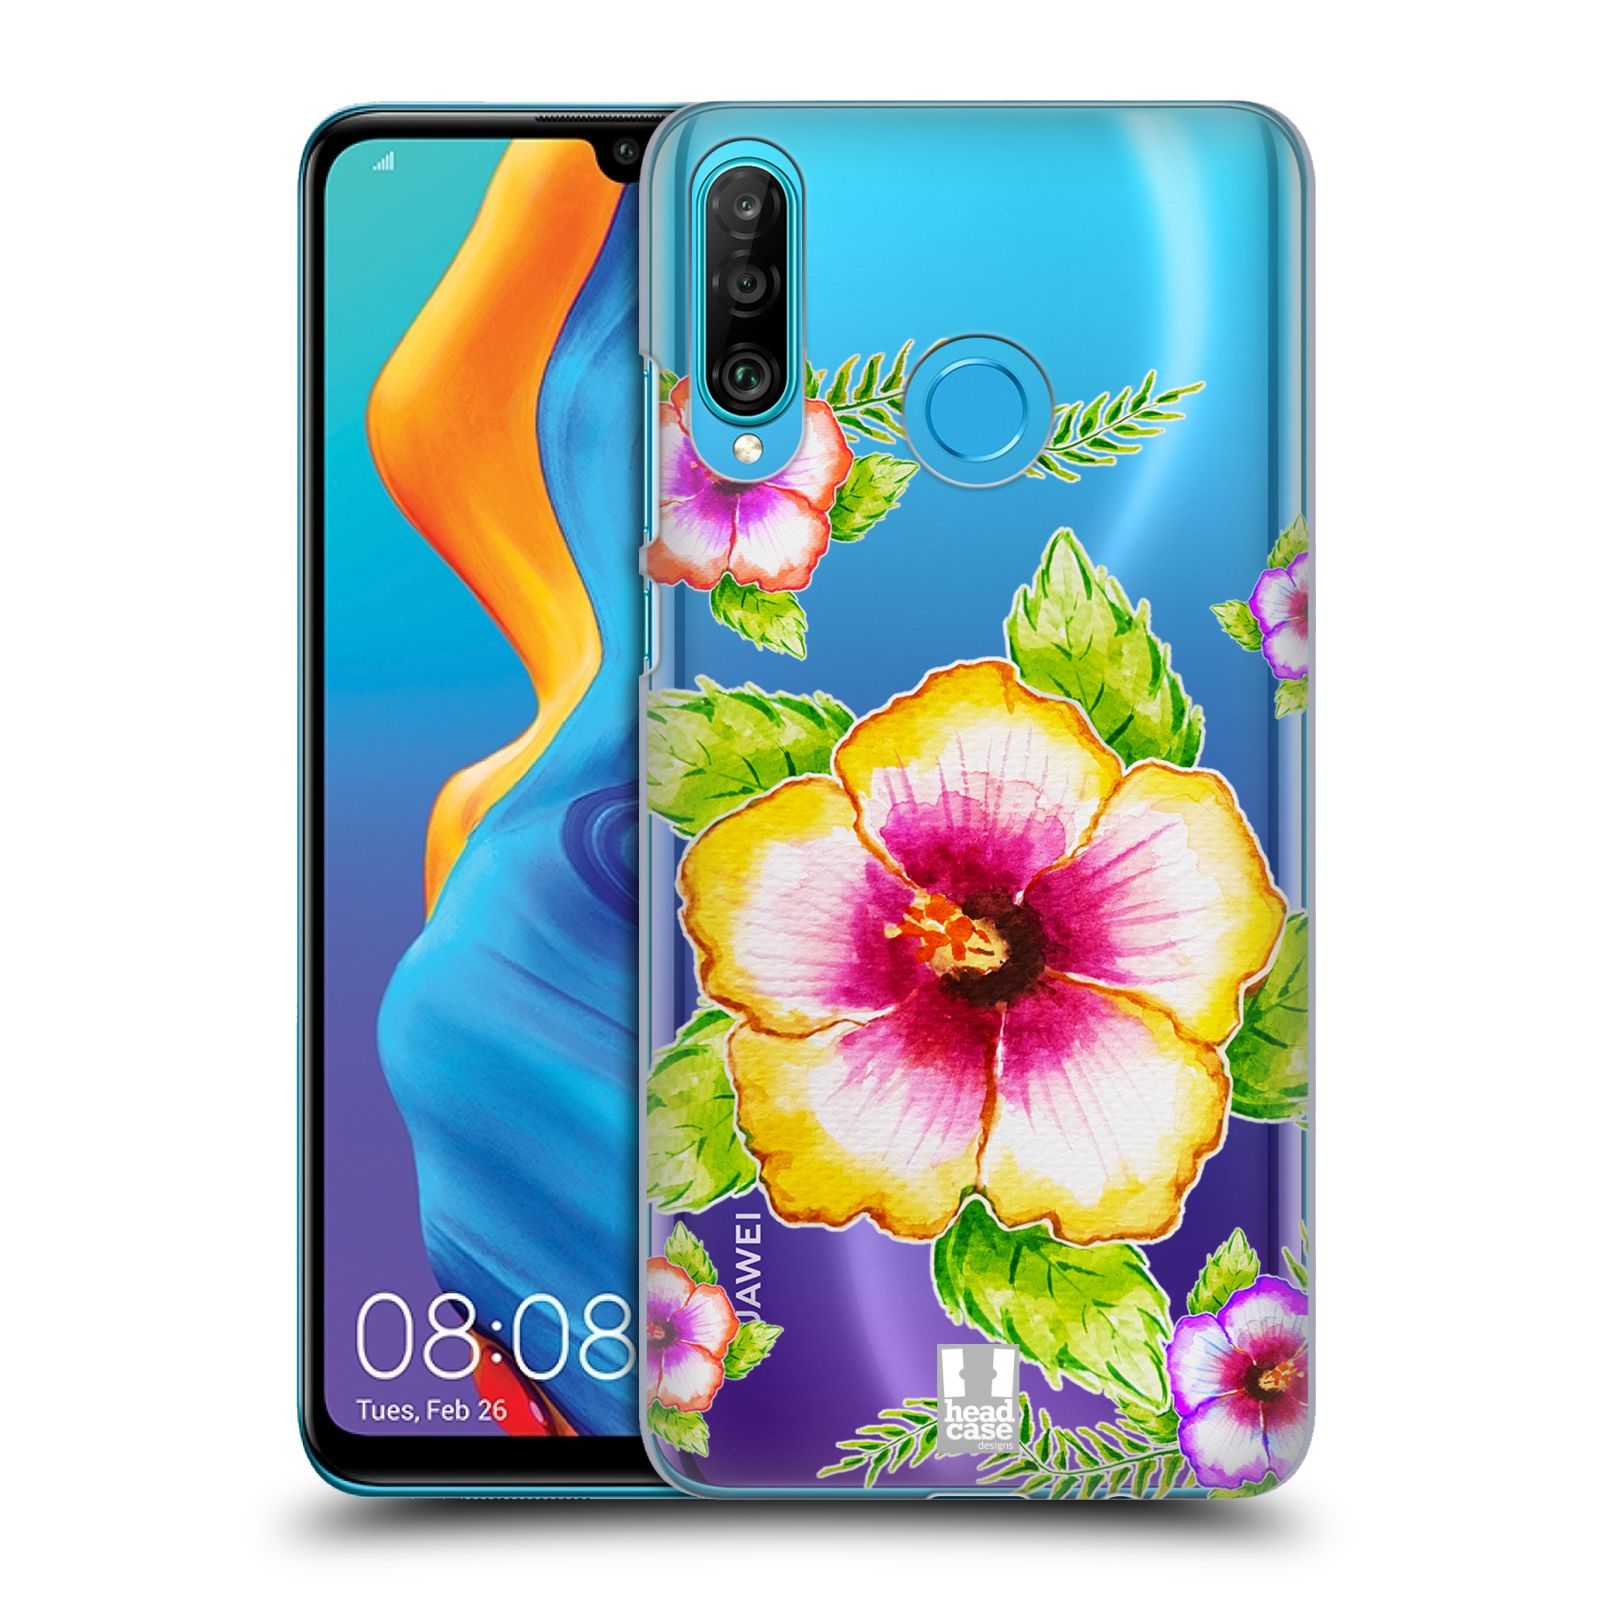 Pouzdro na mobil Huawei P30 LITE - HEAD CASE - Květina Ibišek vodní barvy